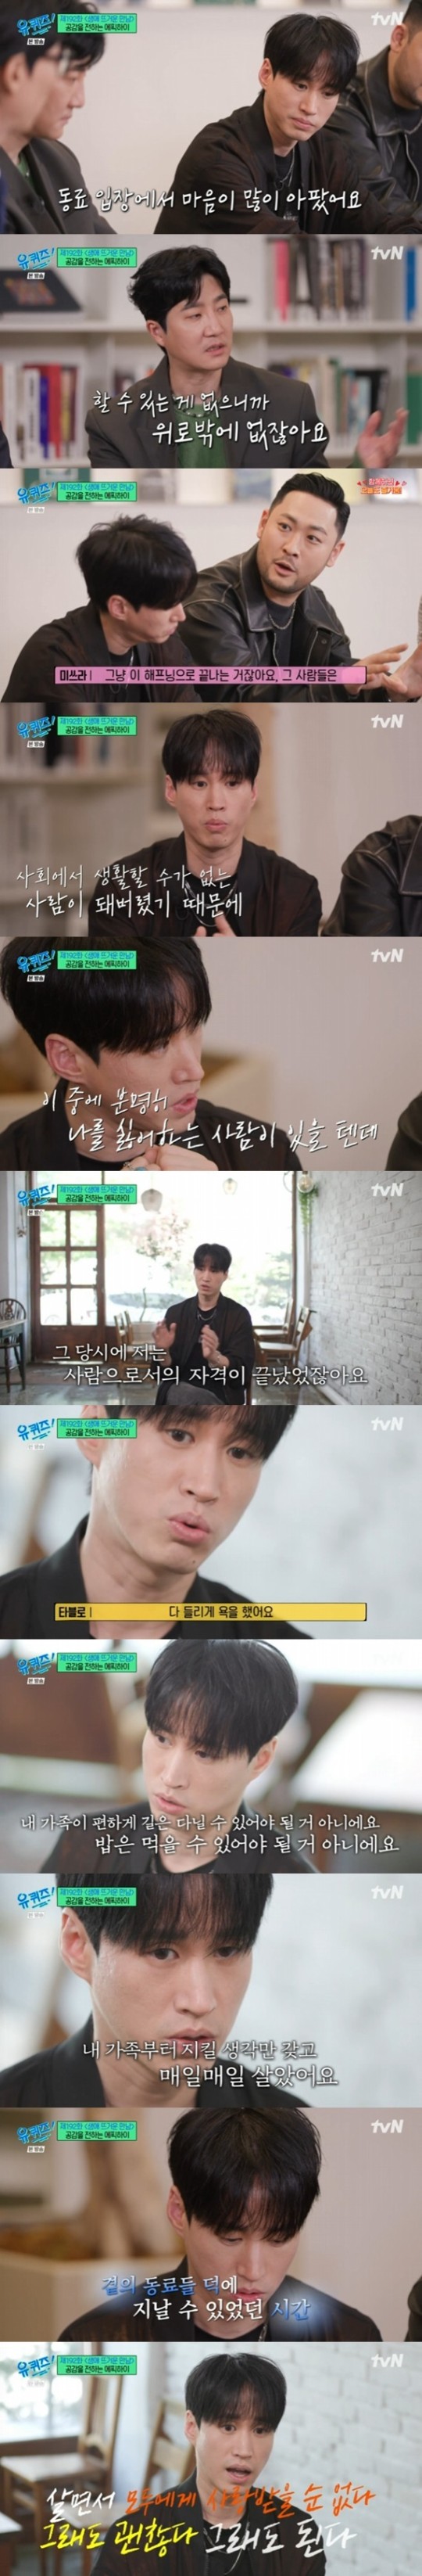 tvN 예능 프로그램 ‘유 퀴즈 온 더 블럭’ 제공